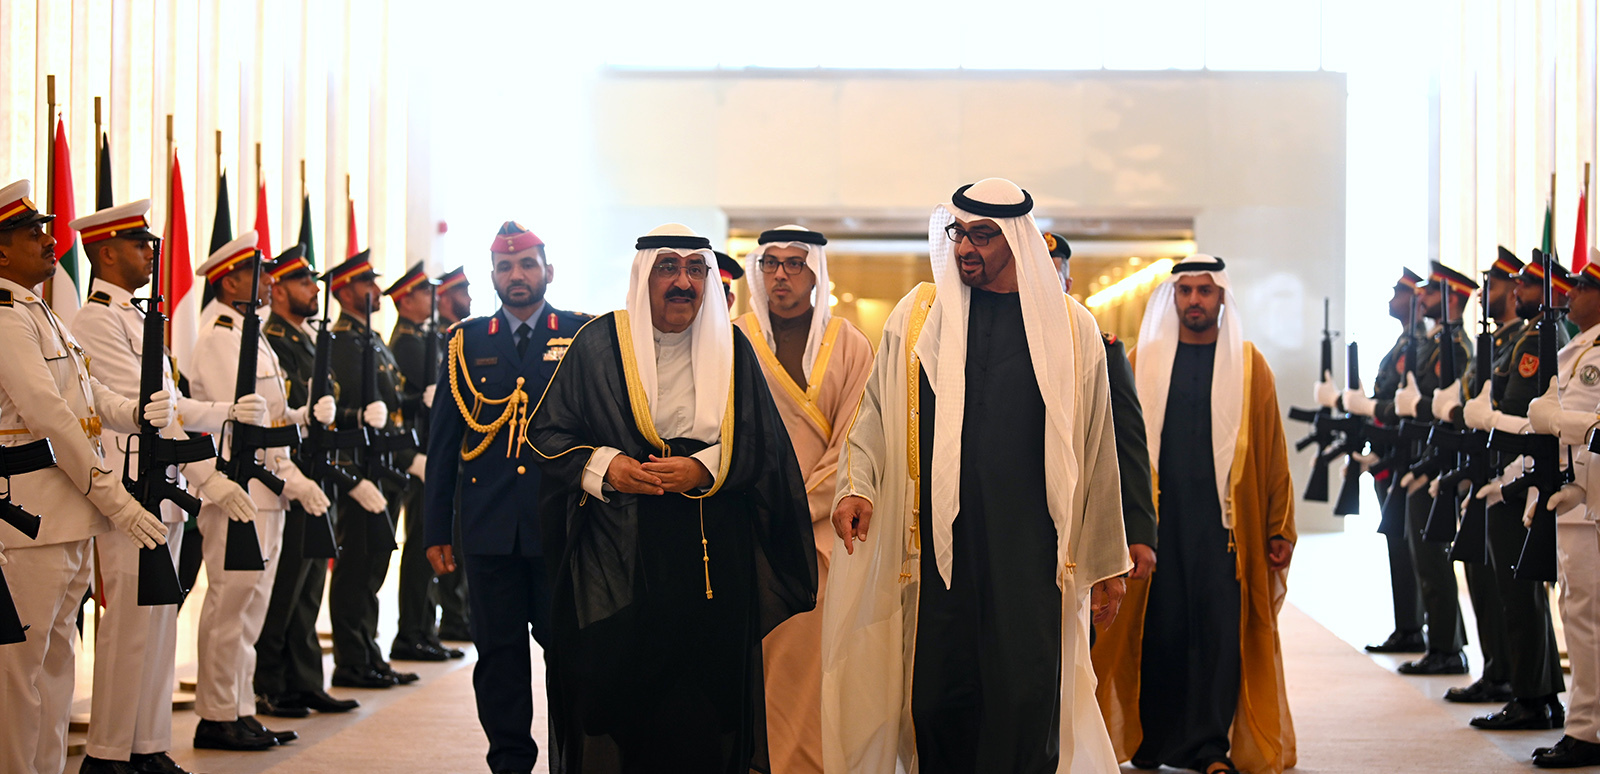 أمير الكويت يزور الأردن تلبية لدعوة الملك عبد الله الثاني